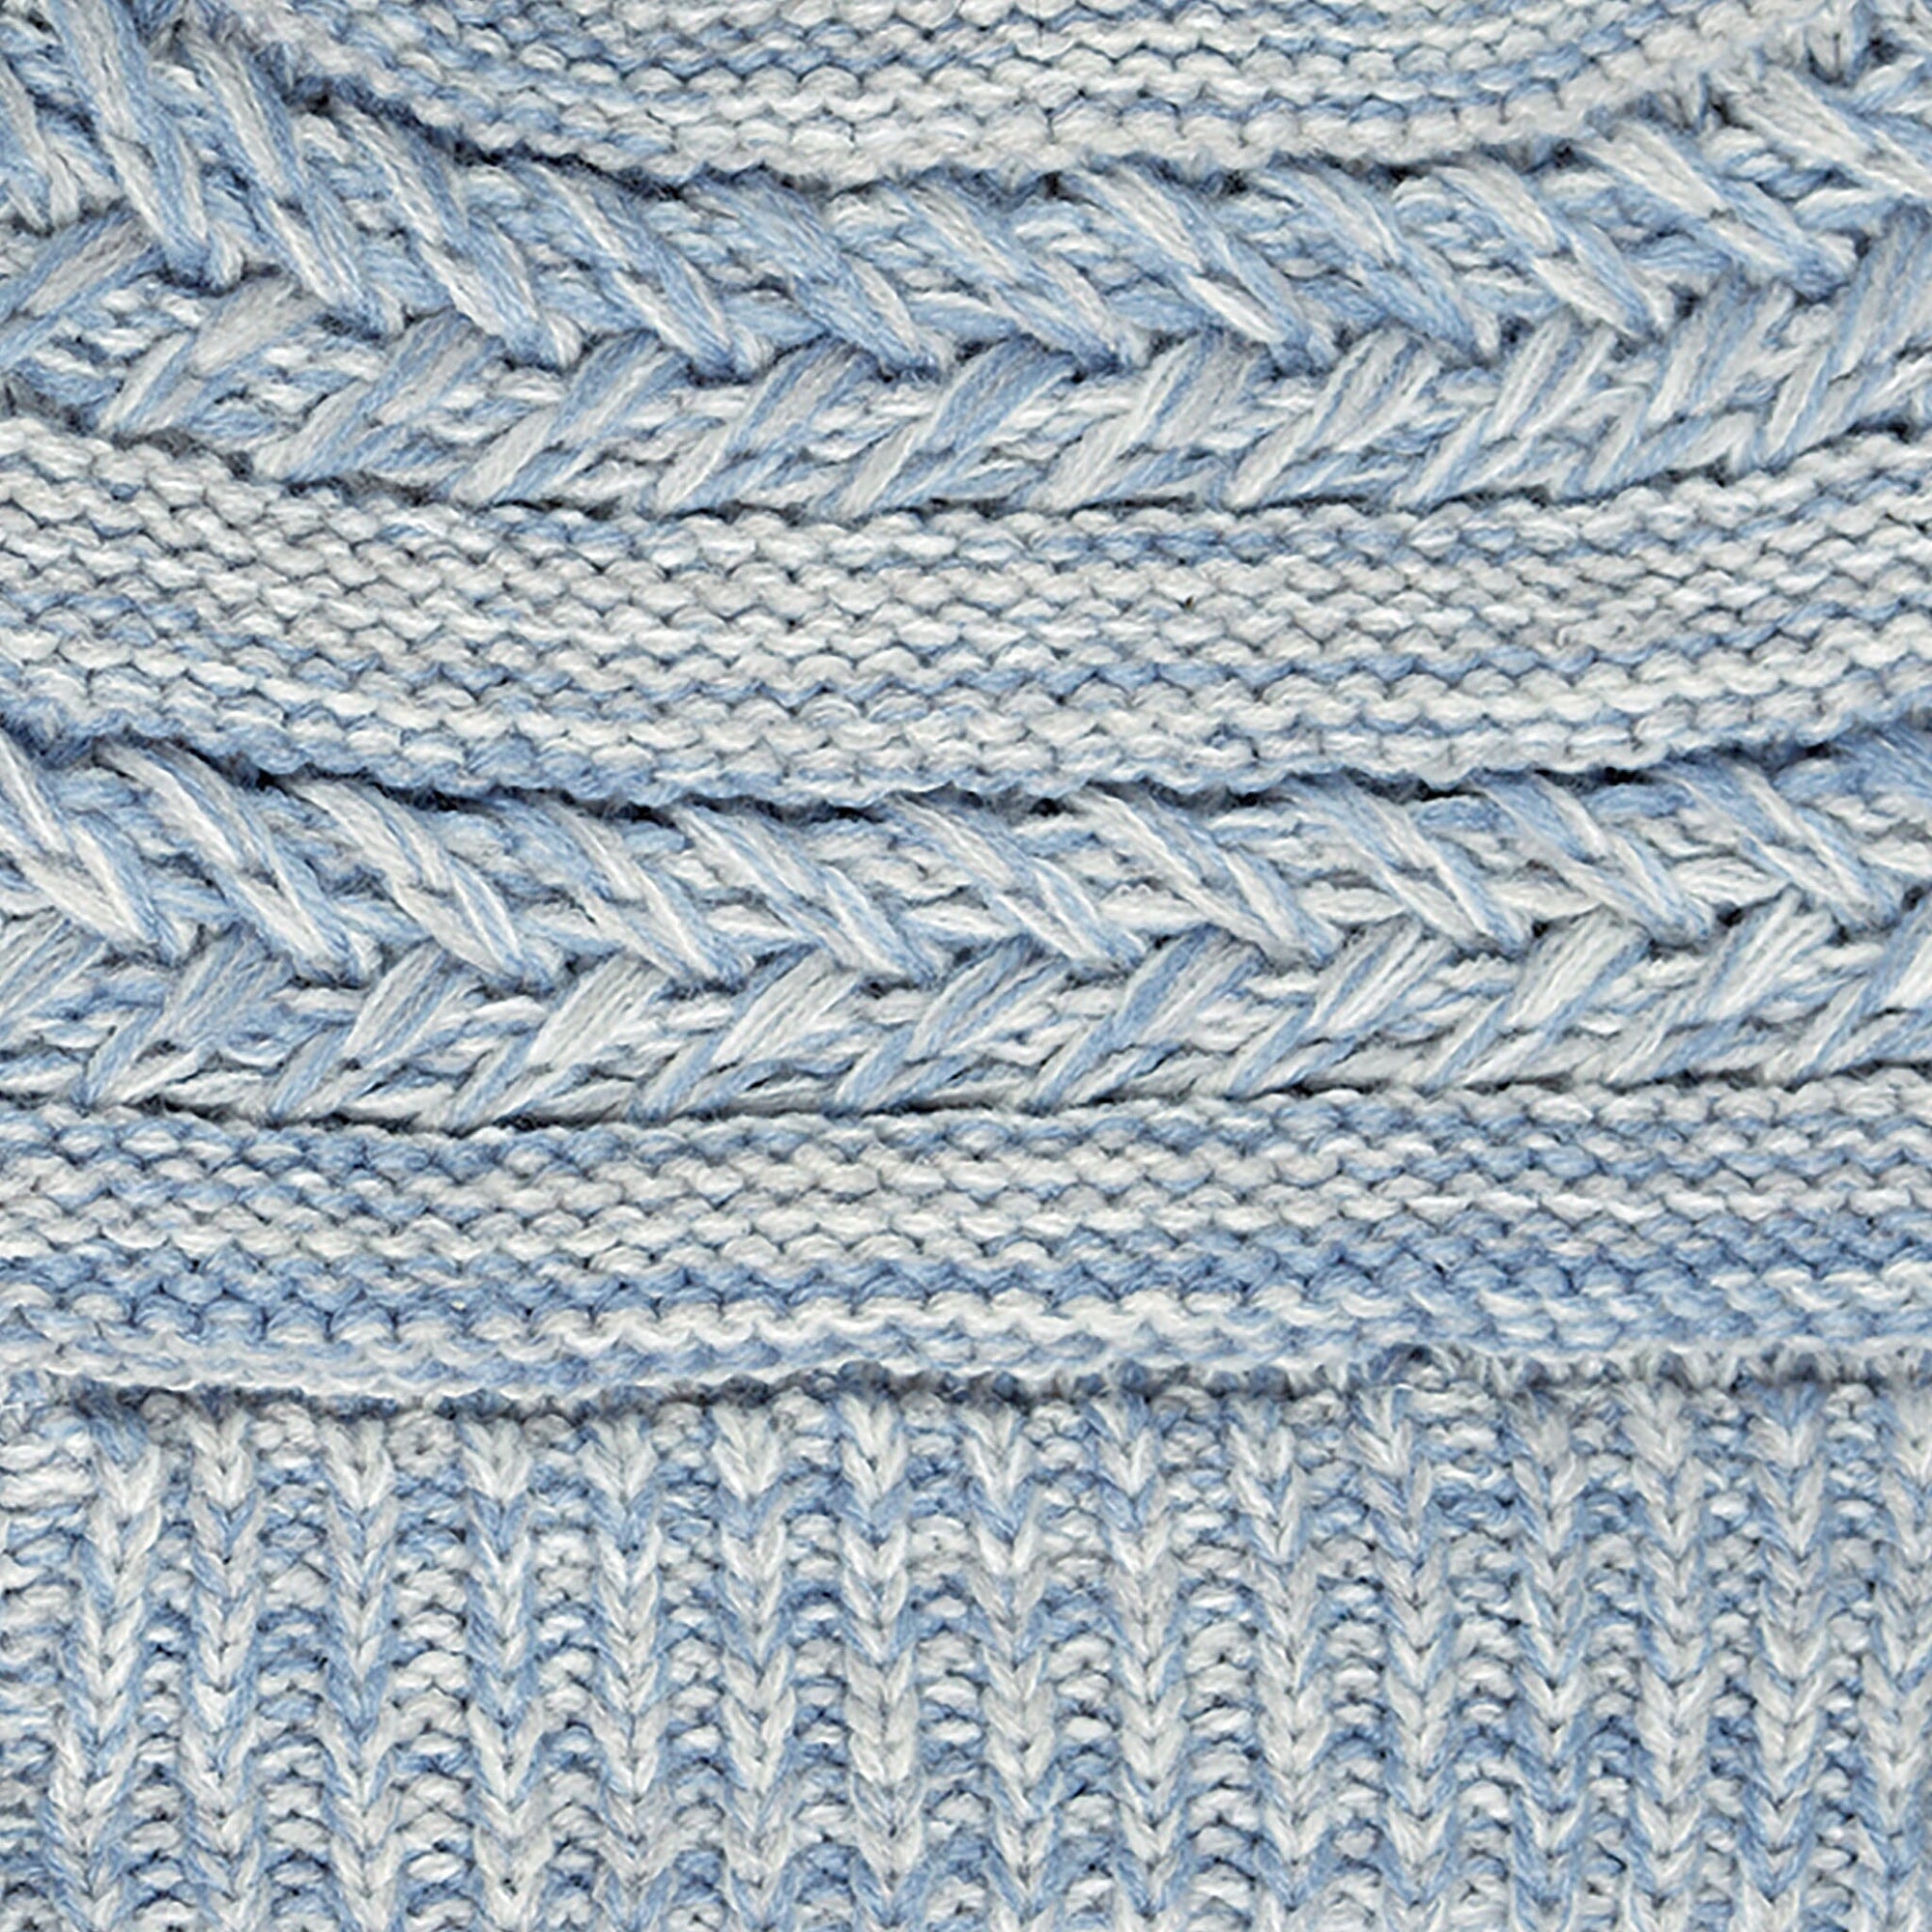 Shown in Dusty Blue Knit